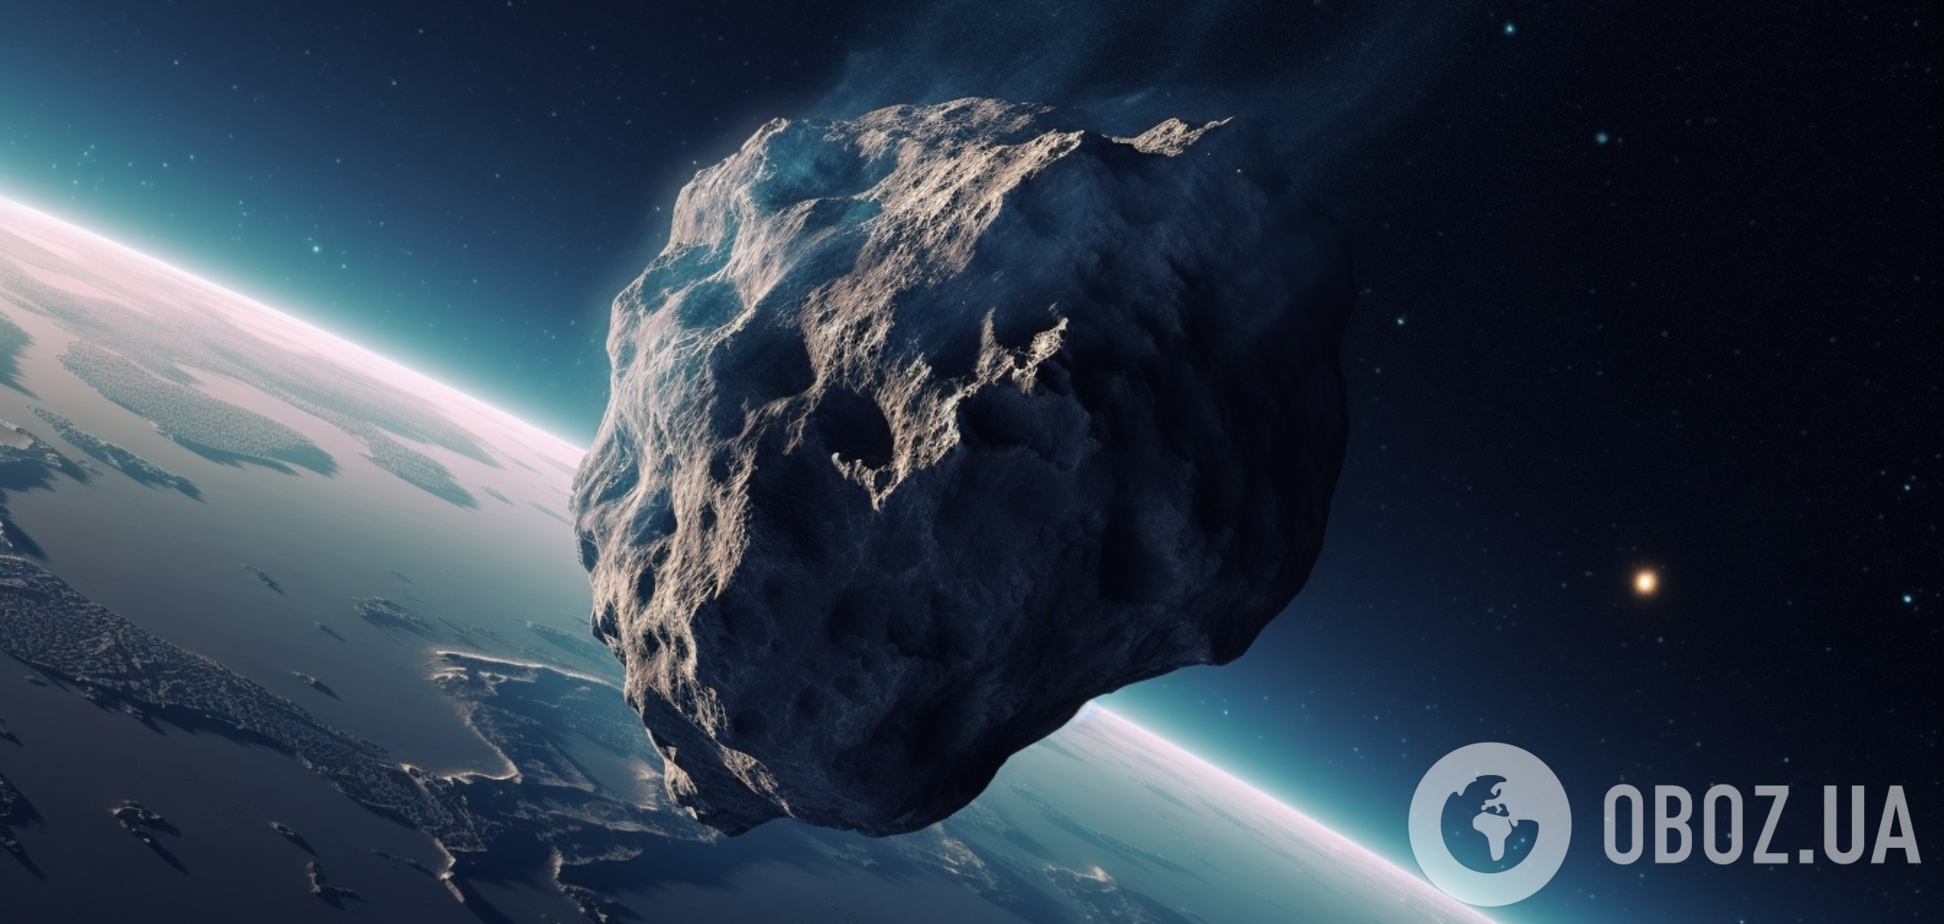 Підбитий NASA астероїд Діморфос почав поводитися хаотично і, ймовірно, падає: вчені припустили, що відбувається